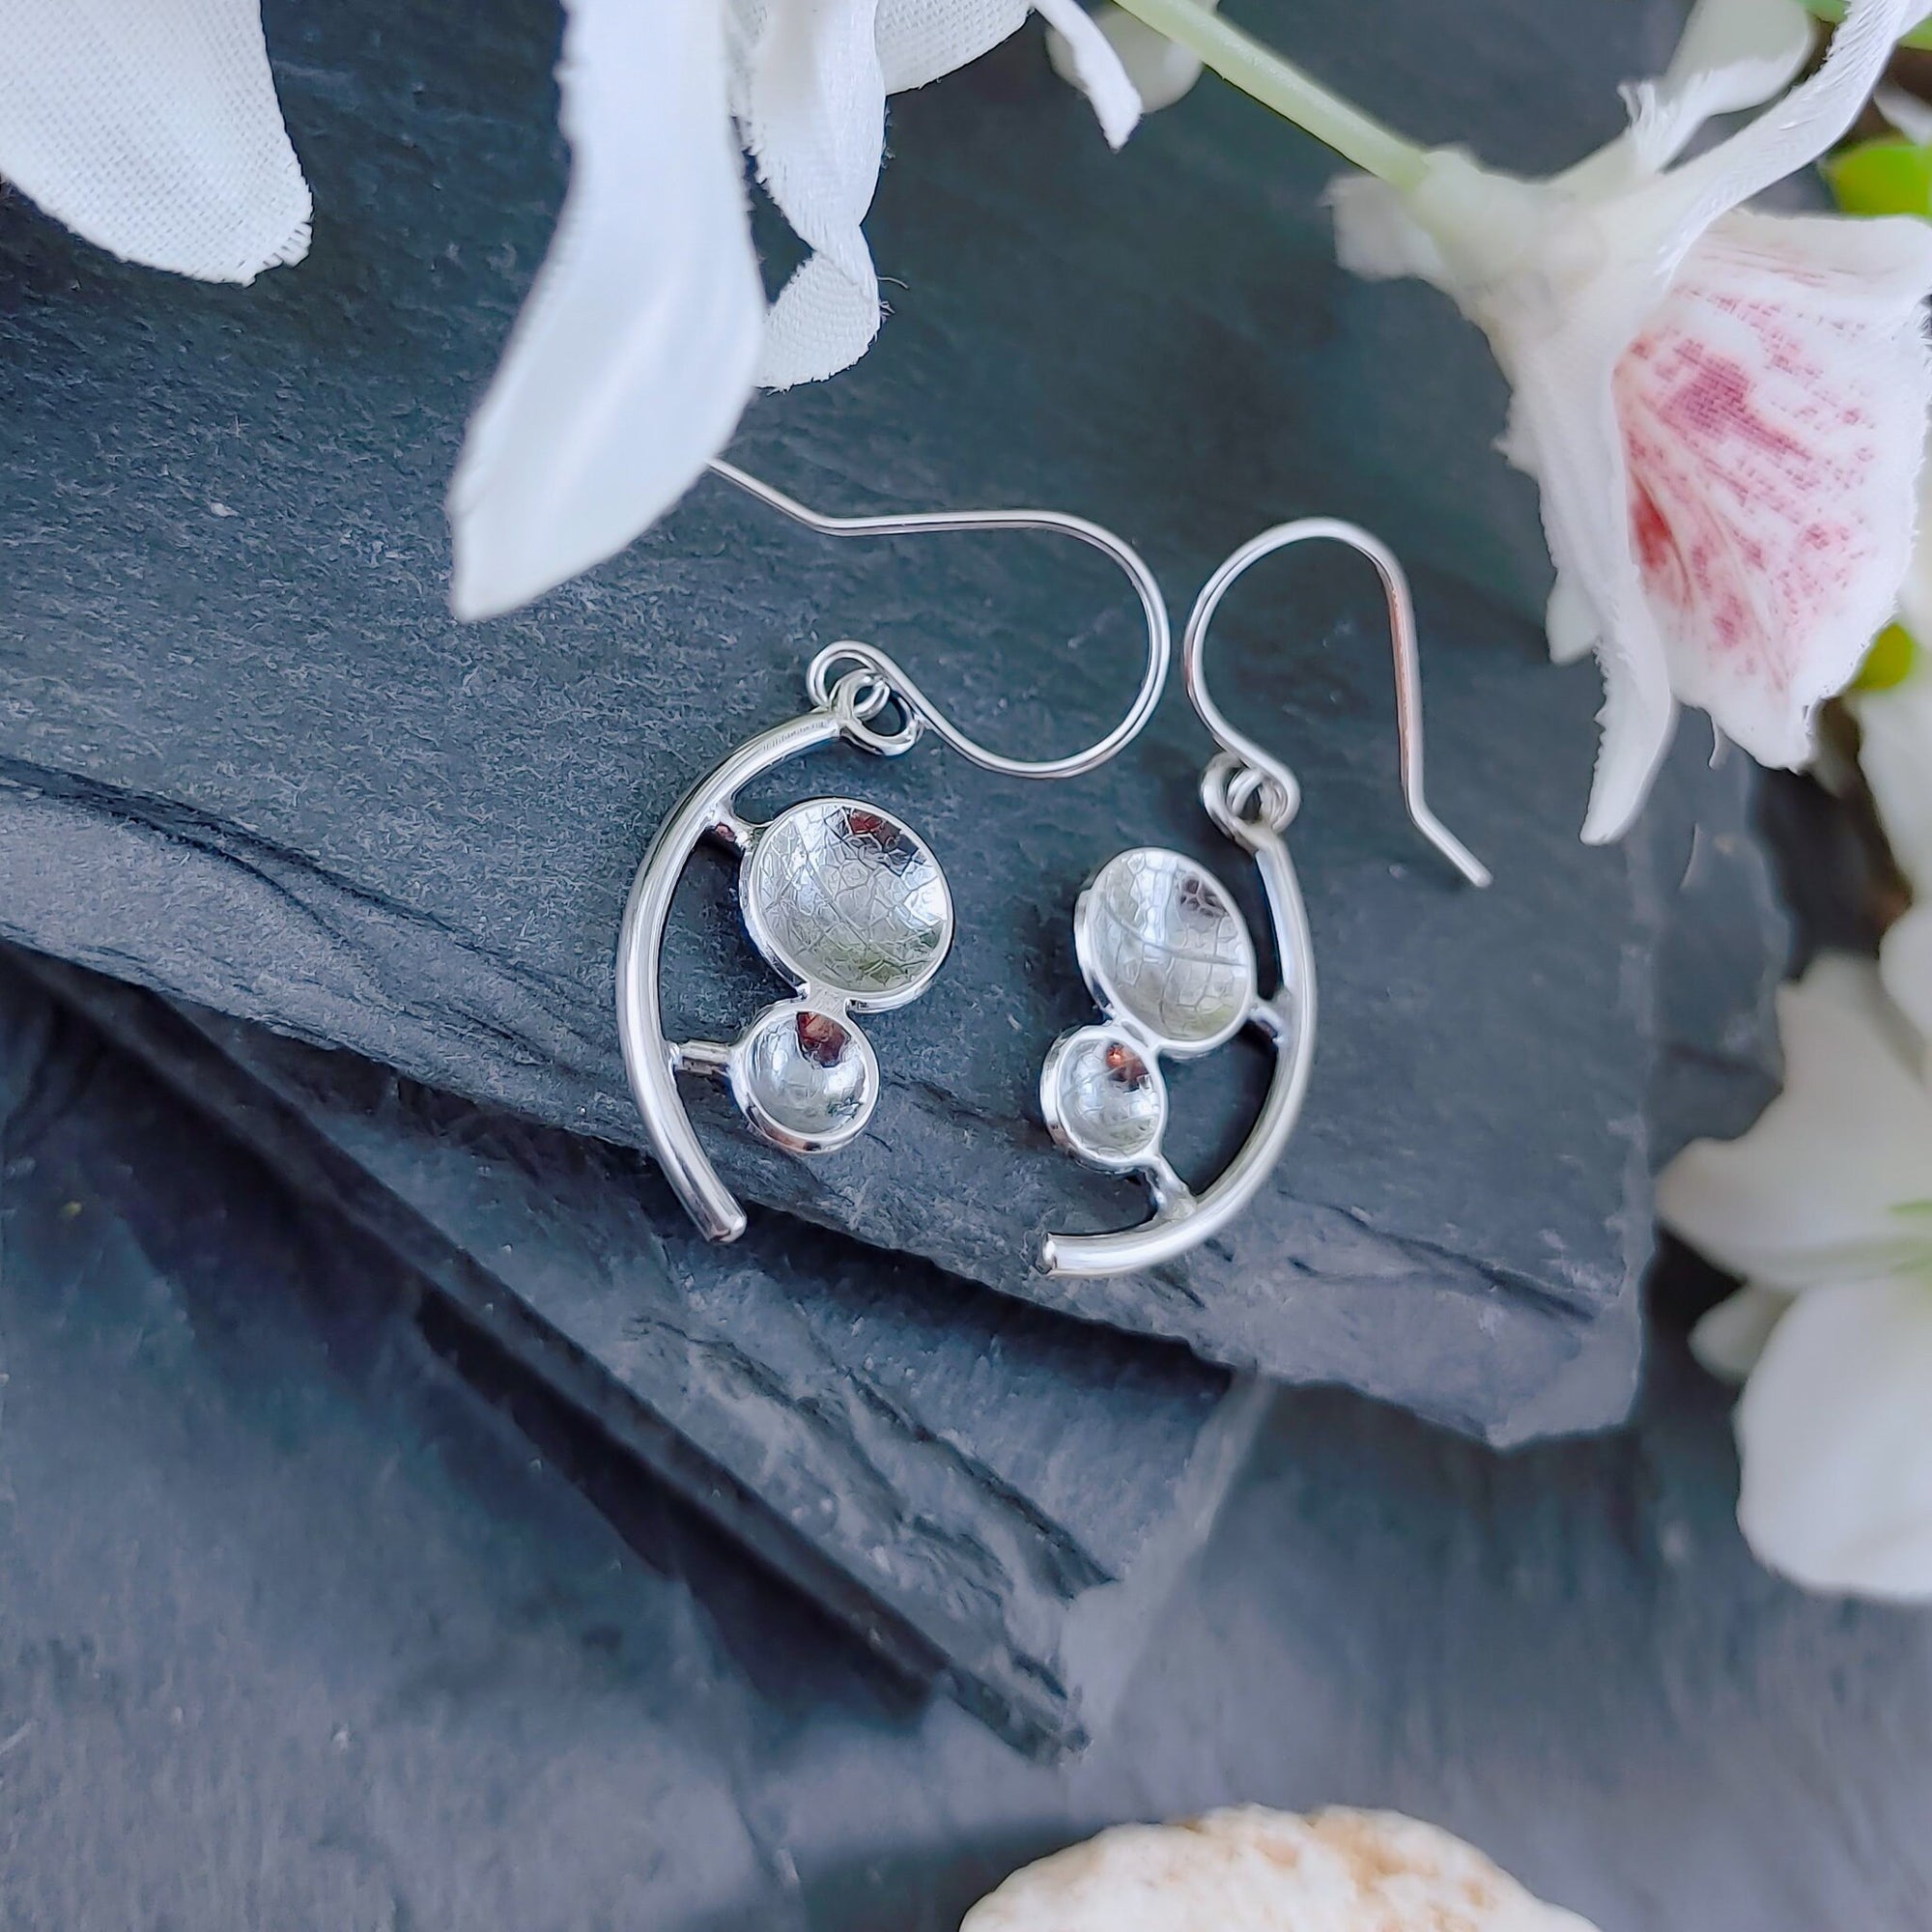 Planets earrings in sterling silver